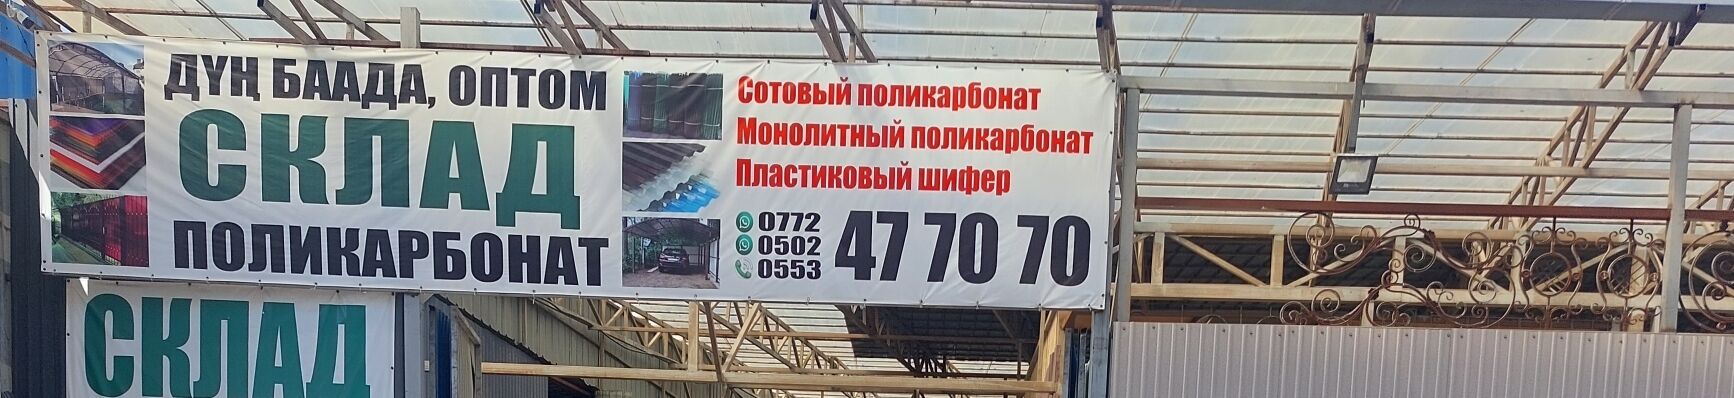 Склад Российского поликарбоната ➤ Кыргызстан ᐉ Бизнес-профиль компании на lalafo.kg